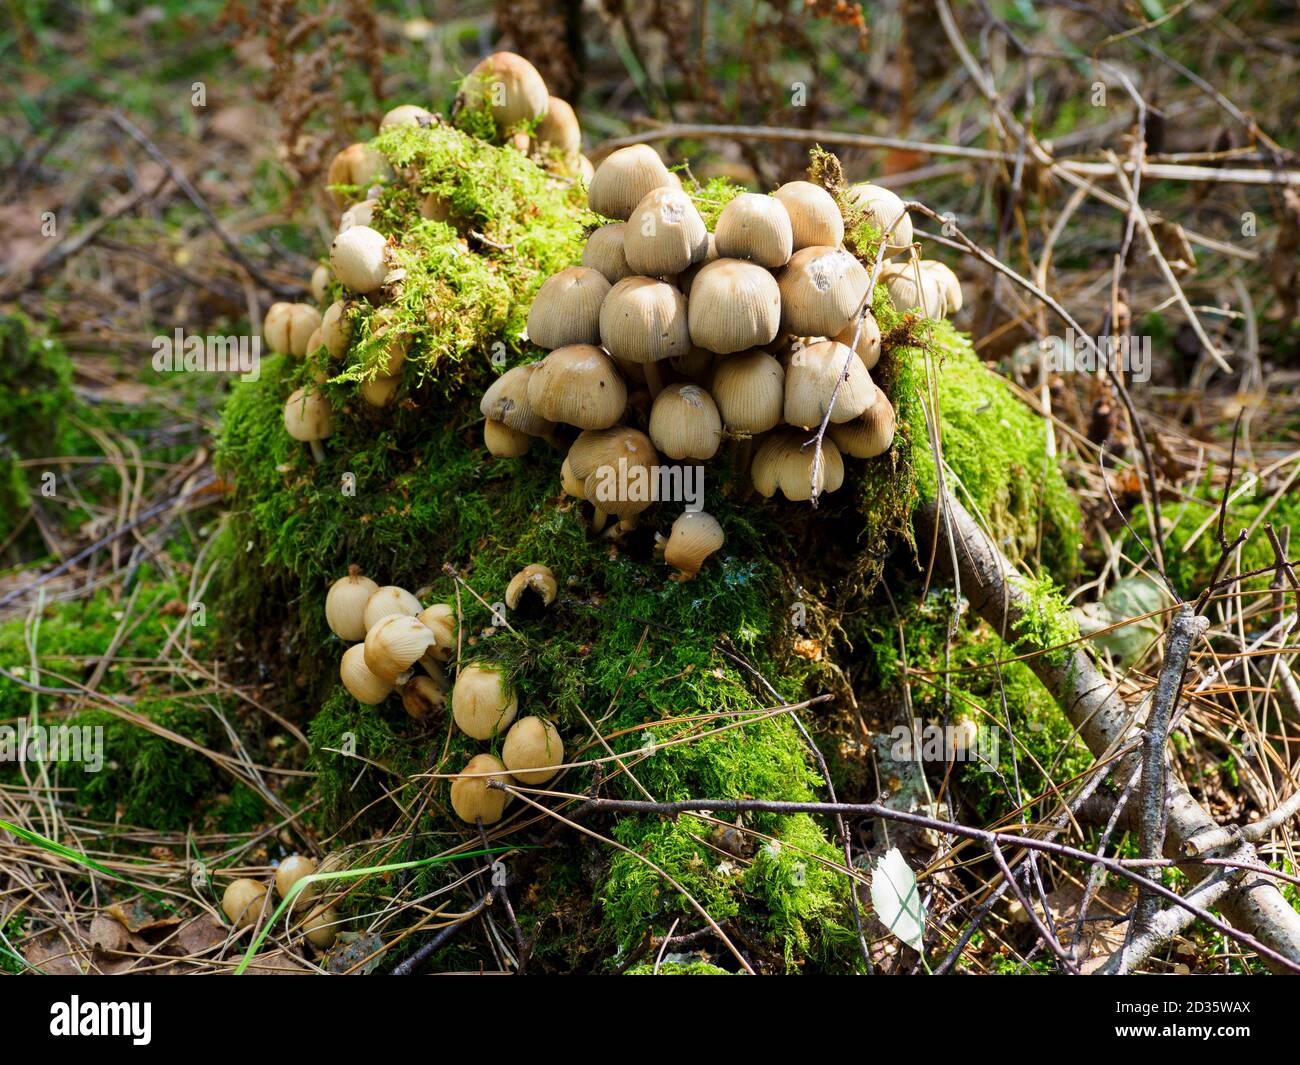 Coprinellus micaceus, glitzernde, inky Caps, die auf einem Baumstumpf wachsen, Thetford Forest, Norfolk, Großbritannien Stockfoto